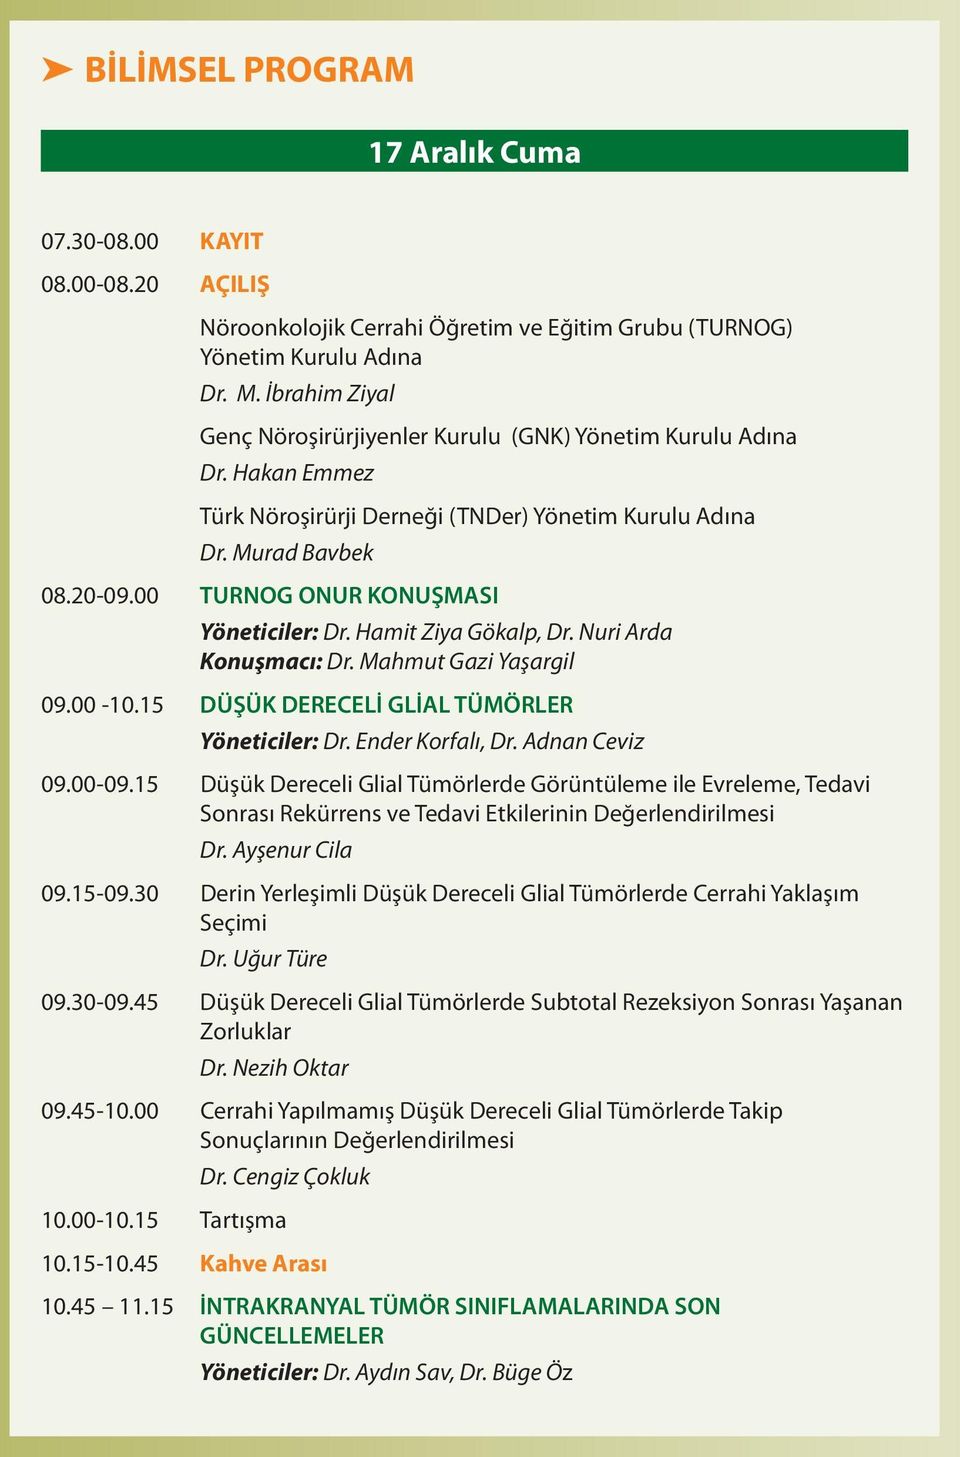 Hamit Ziya Gökalp, Dr. Nuri Arda Konuşmacı: Dr. Mahmut Gazi Yaşargil 09.00-10.15 DÜŞÜK DERECELİ GLİAL TÜMÖRLER Yöneticiler: Dr. Ender Korfalı, Dr. Adnan Ceviz 09.00-09.